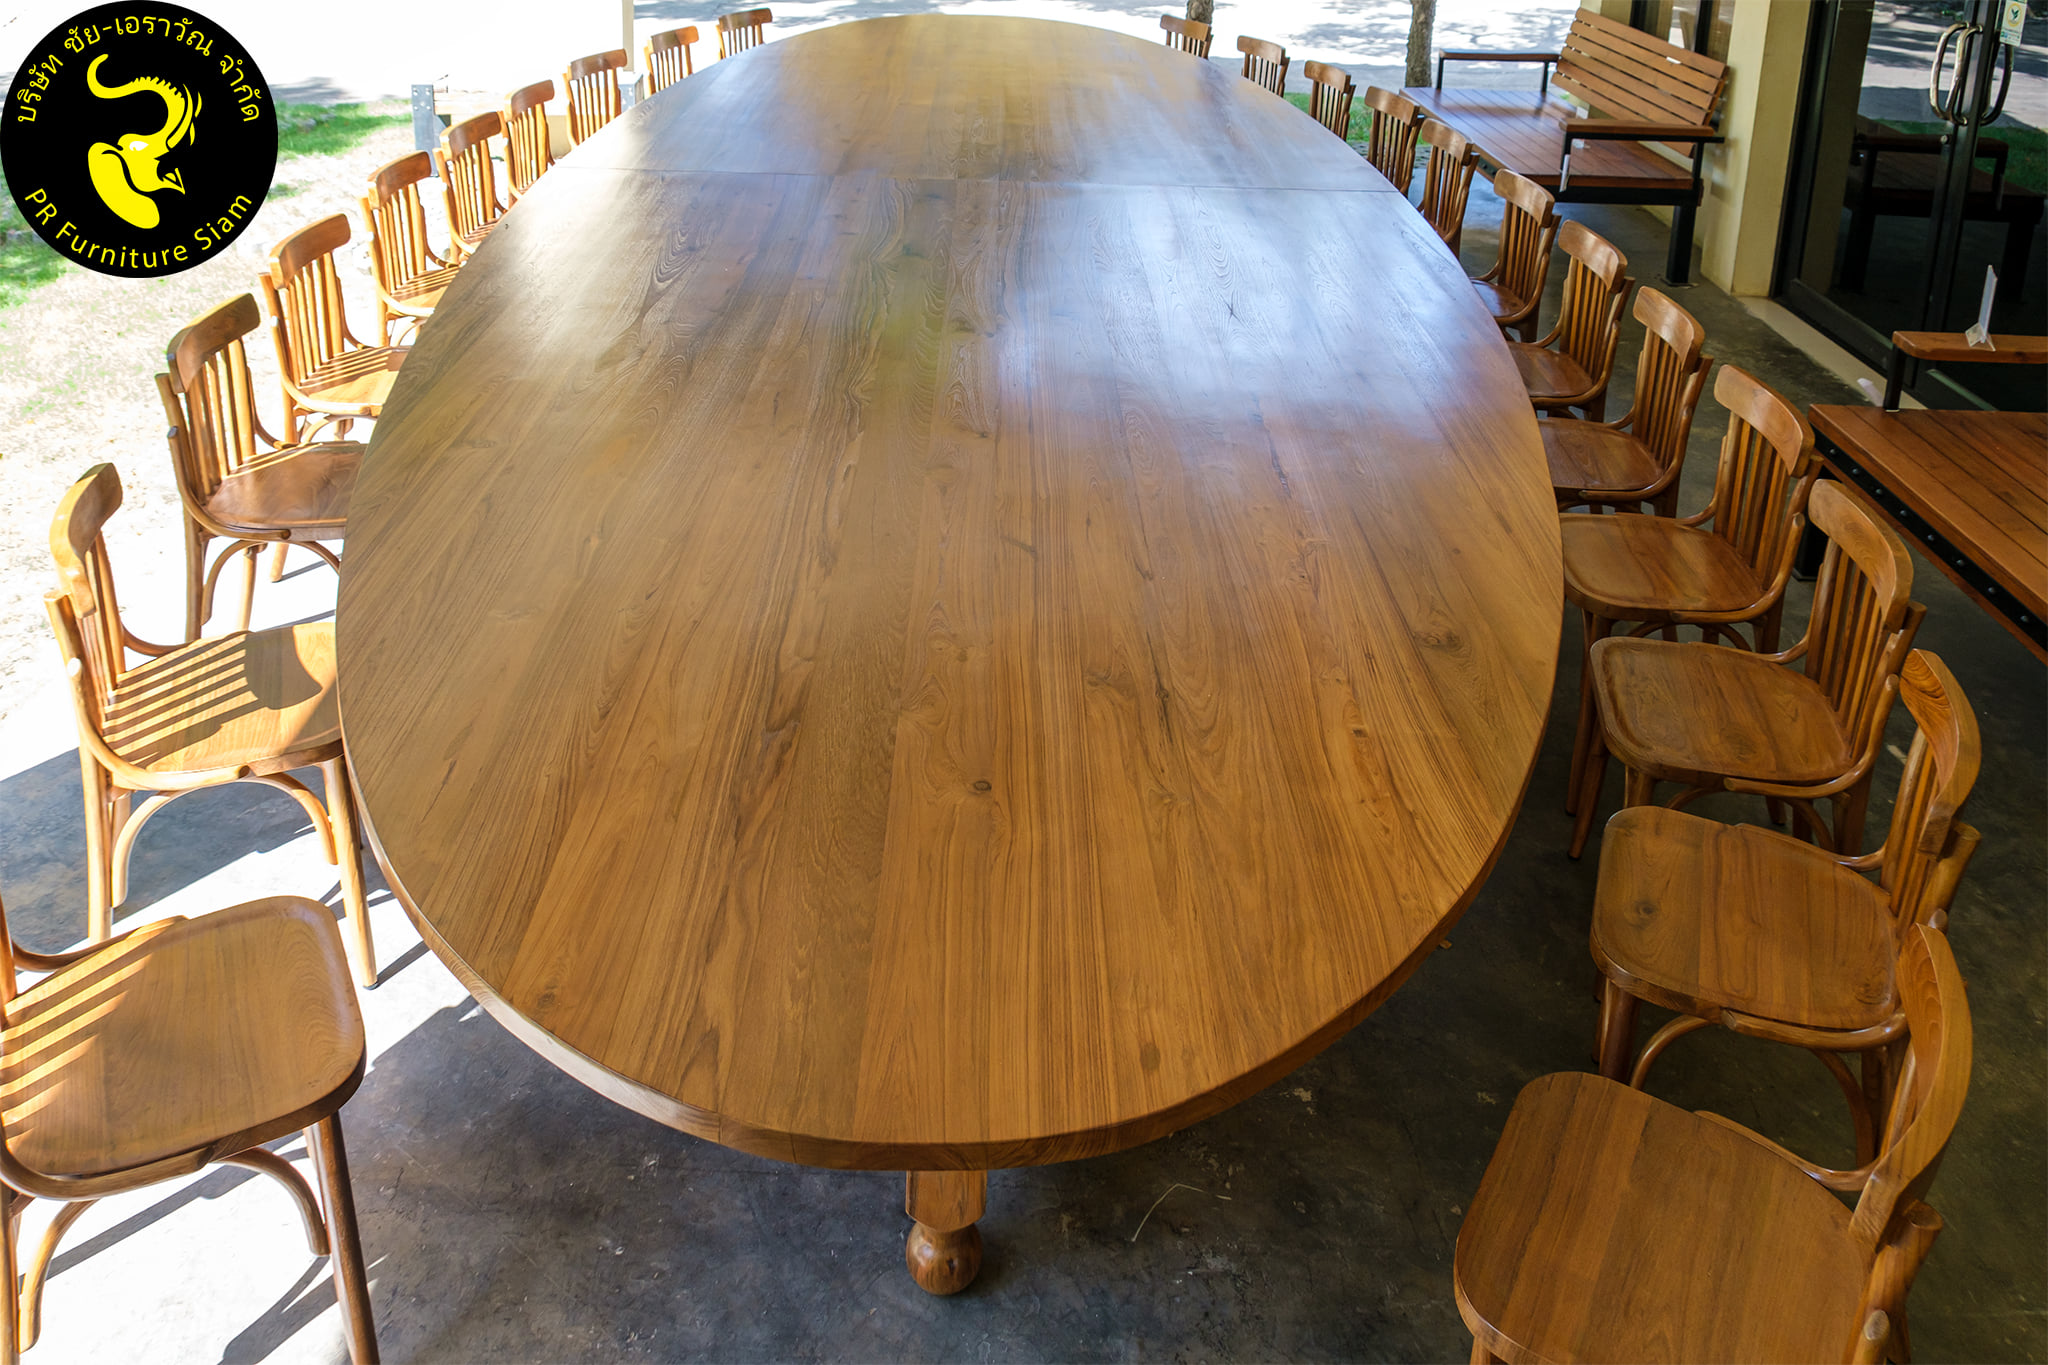 โต๊ะประชุมวงรีไม้สัก ขนาดใหญ่ สั่งทำตามแบบ